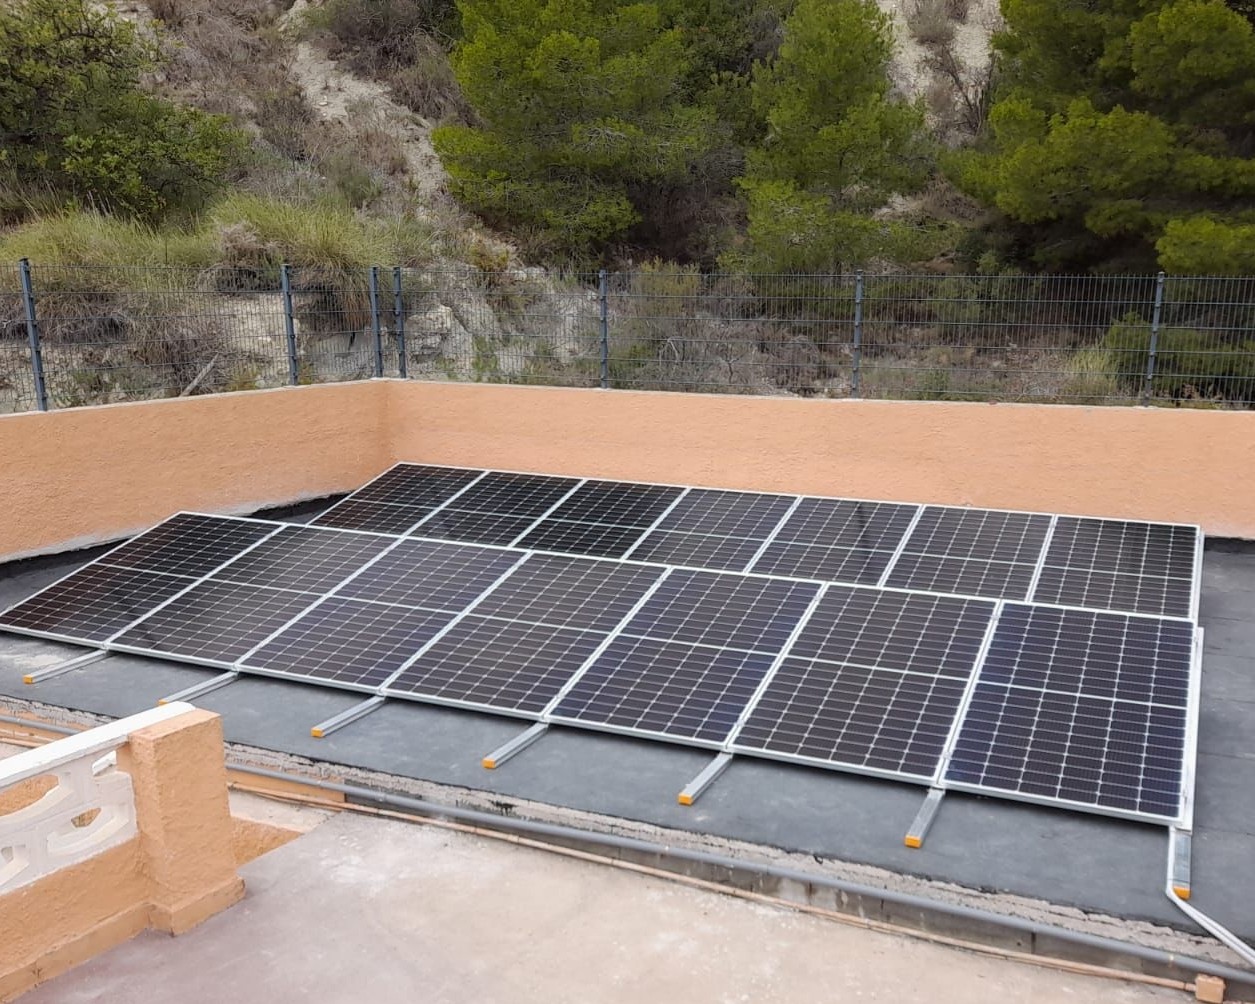 14X 385 wp Paneles Solares, Calpe, Alicante (Sistema híbrido)